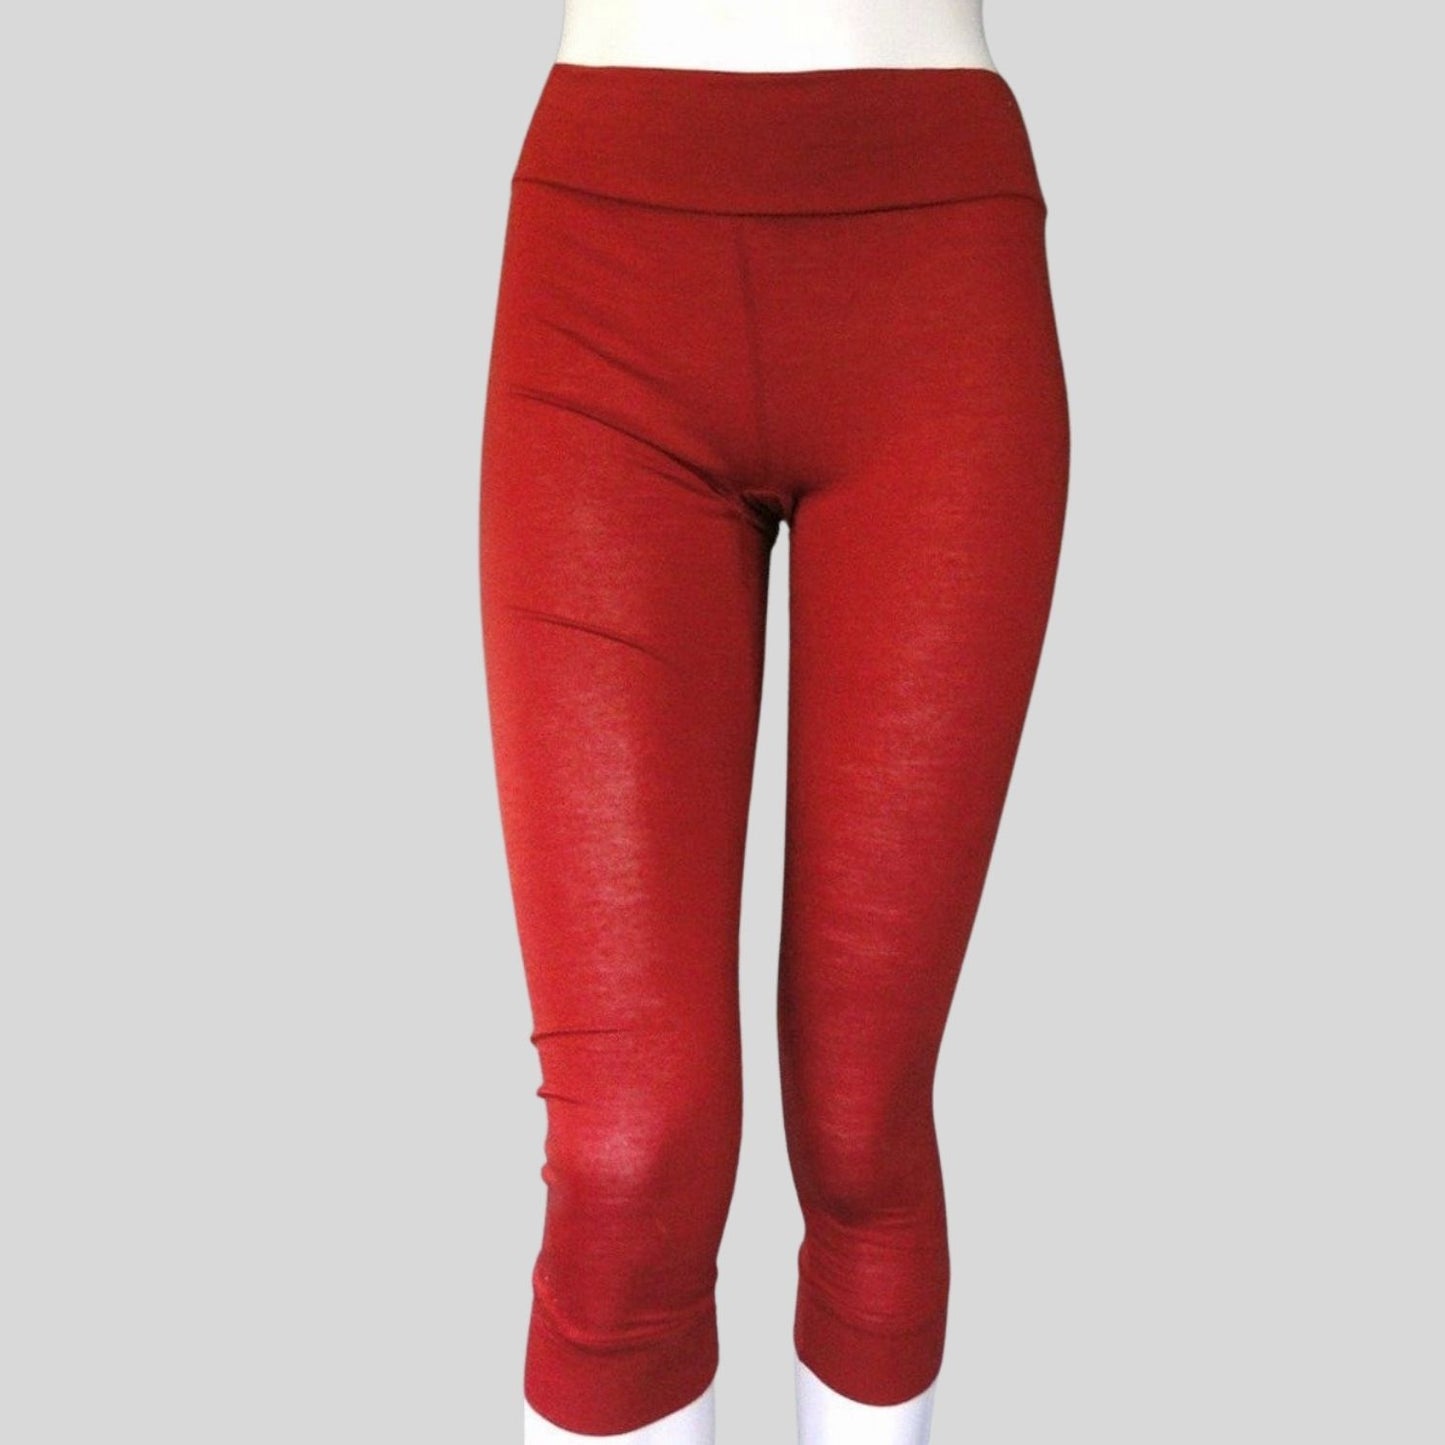 Buy online Brown Wool Woolen Legging from winter wear for Women by